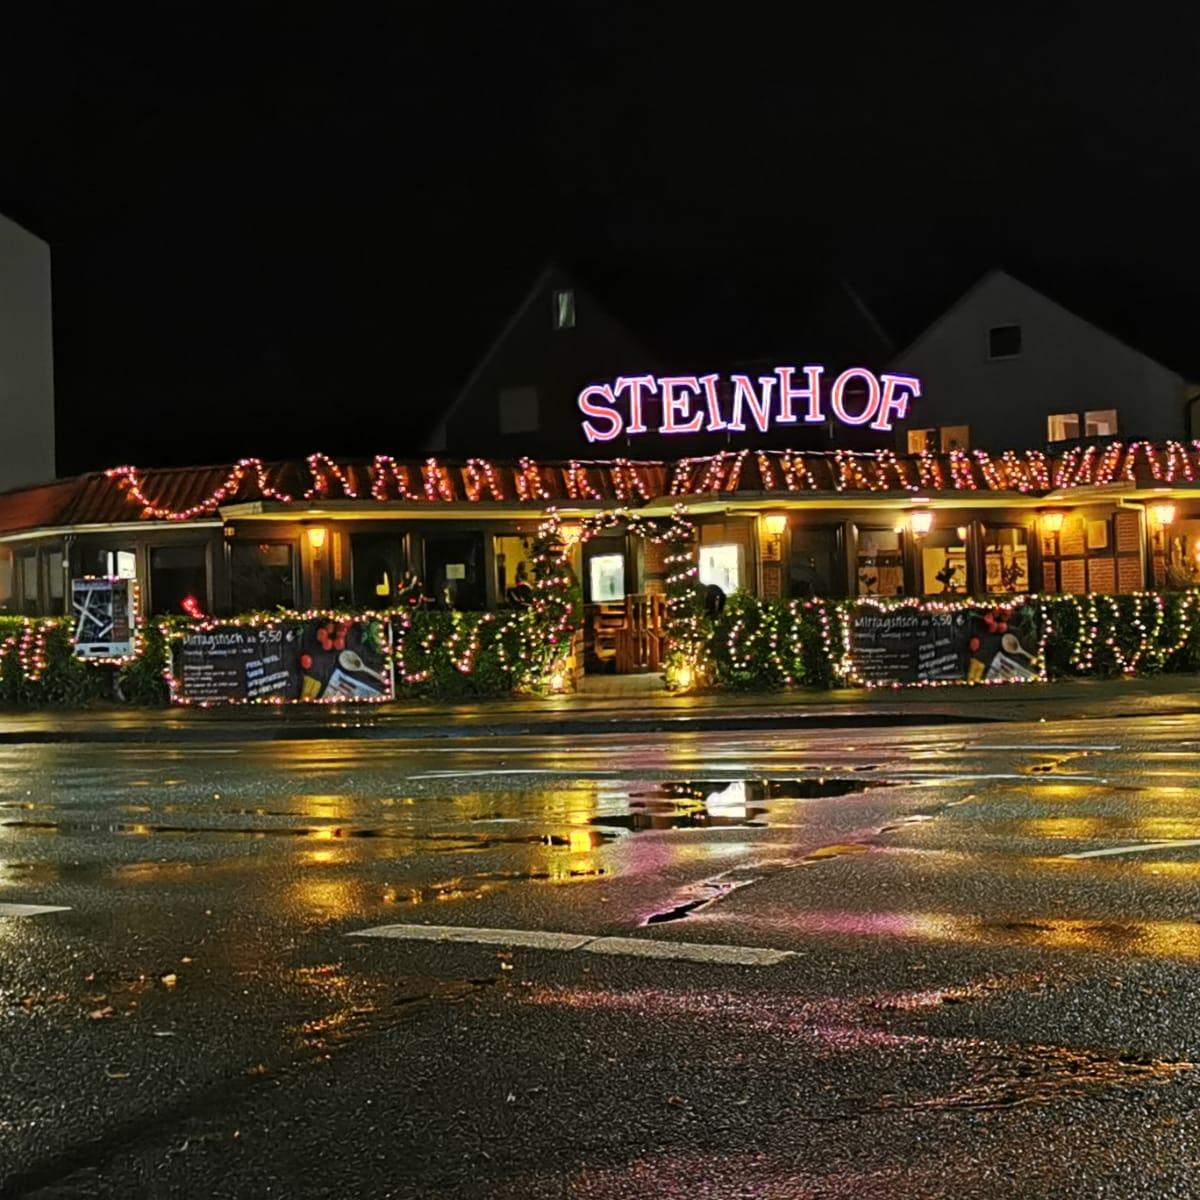 Restaurant "Steinhof" in  Uelzen